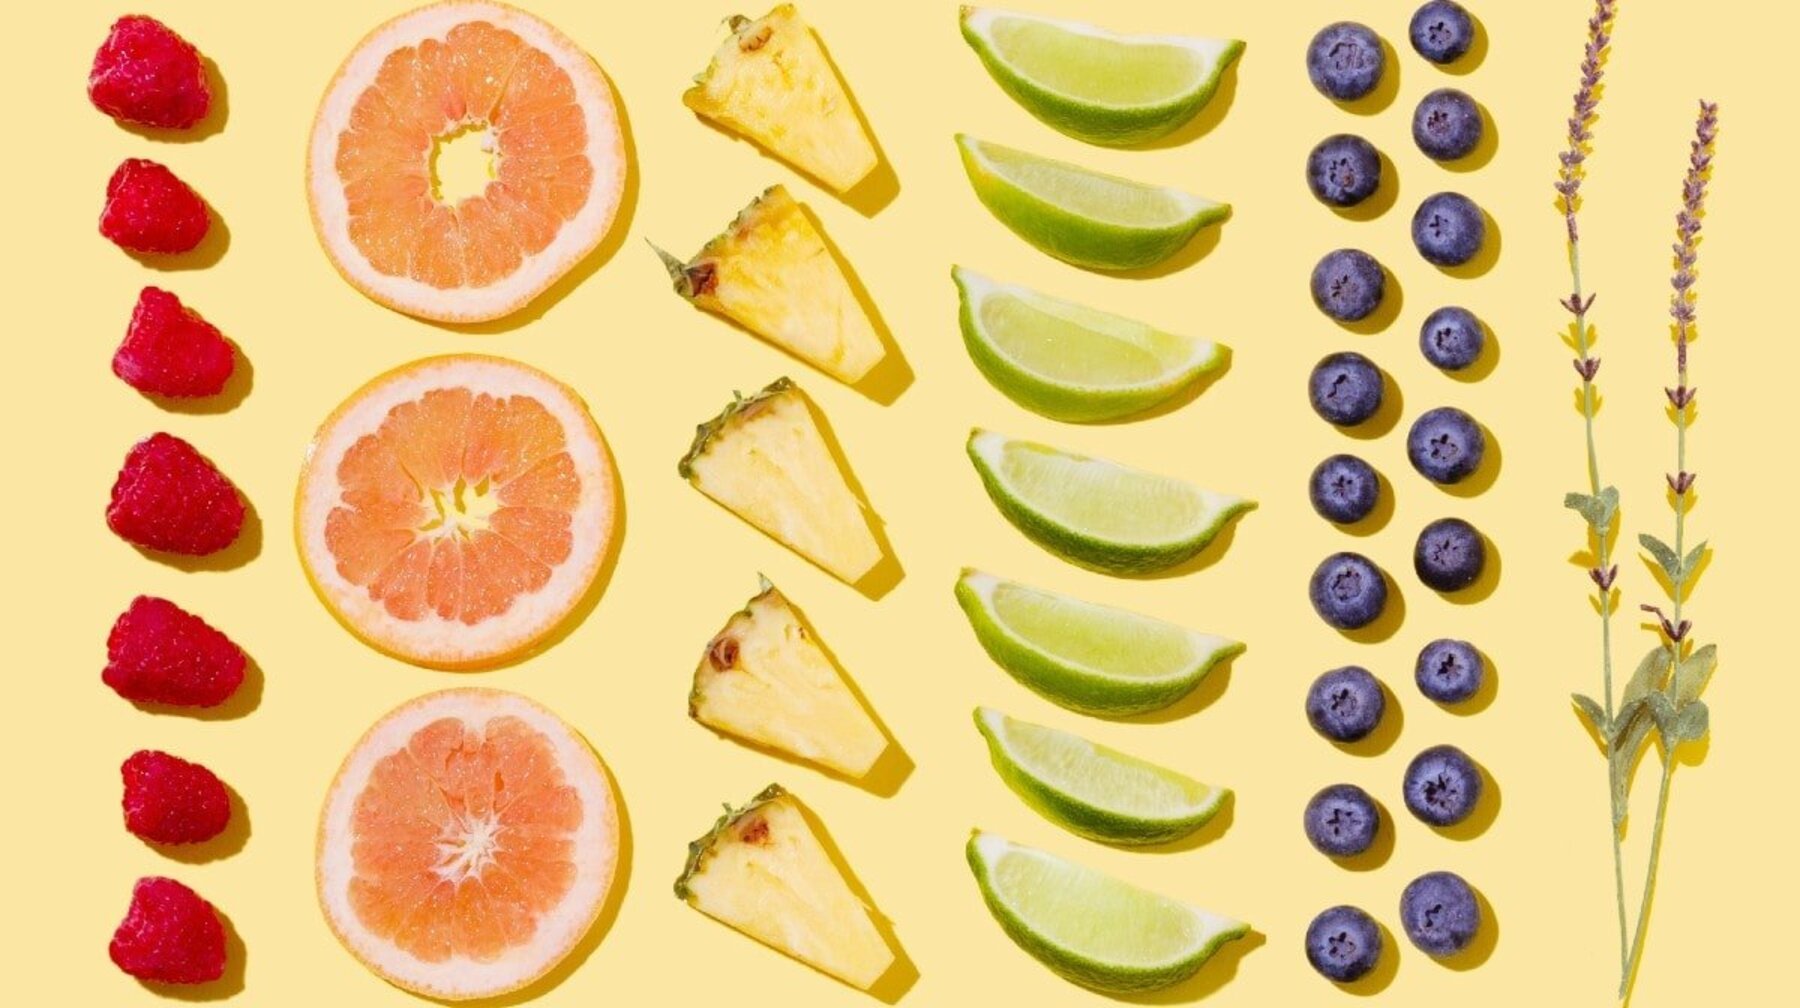 Wat is het fruitarische dieet? | Voedingsdeskundige Bekijkt de Voordelen, nadelen en waarom je het niet zou moeten proberen